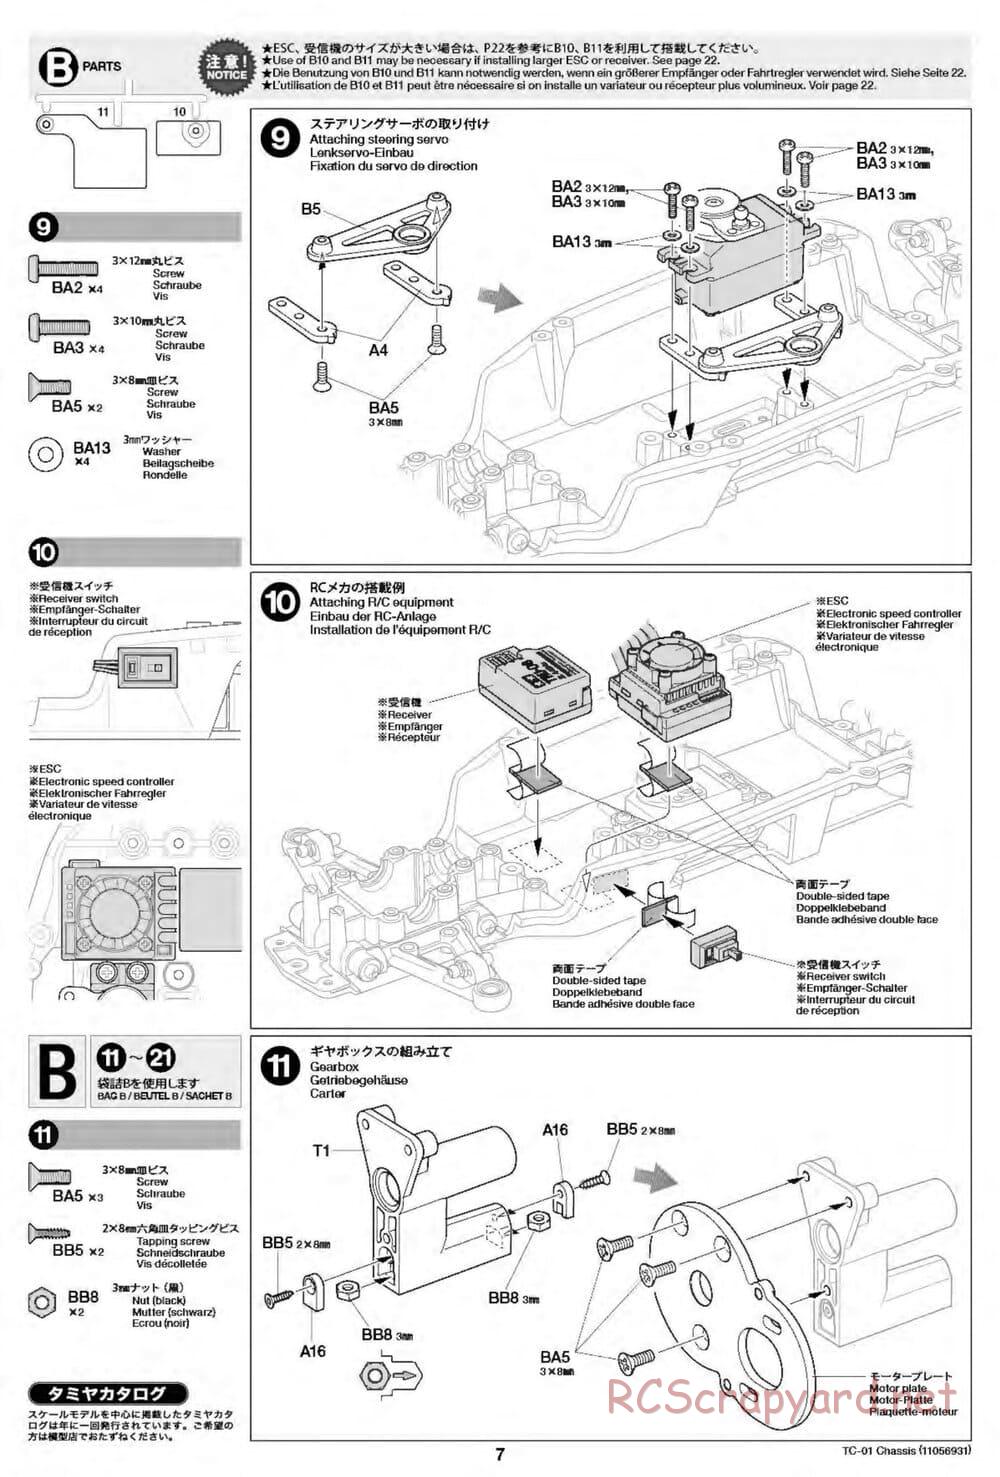 Tamiya - TC-01 Chassis - Manual - Page 7